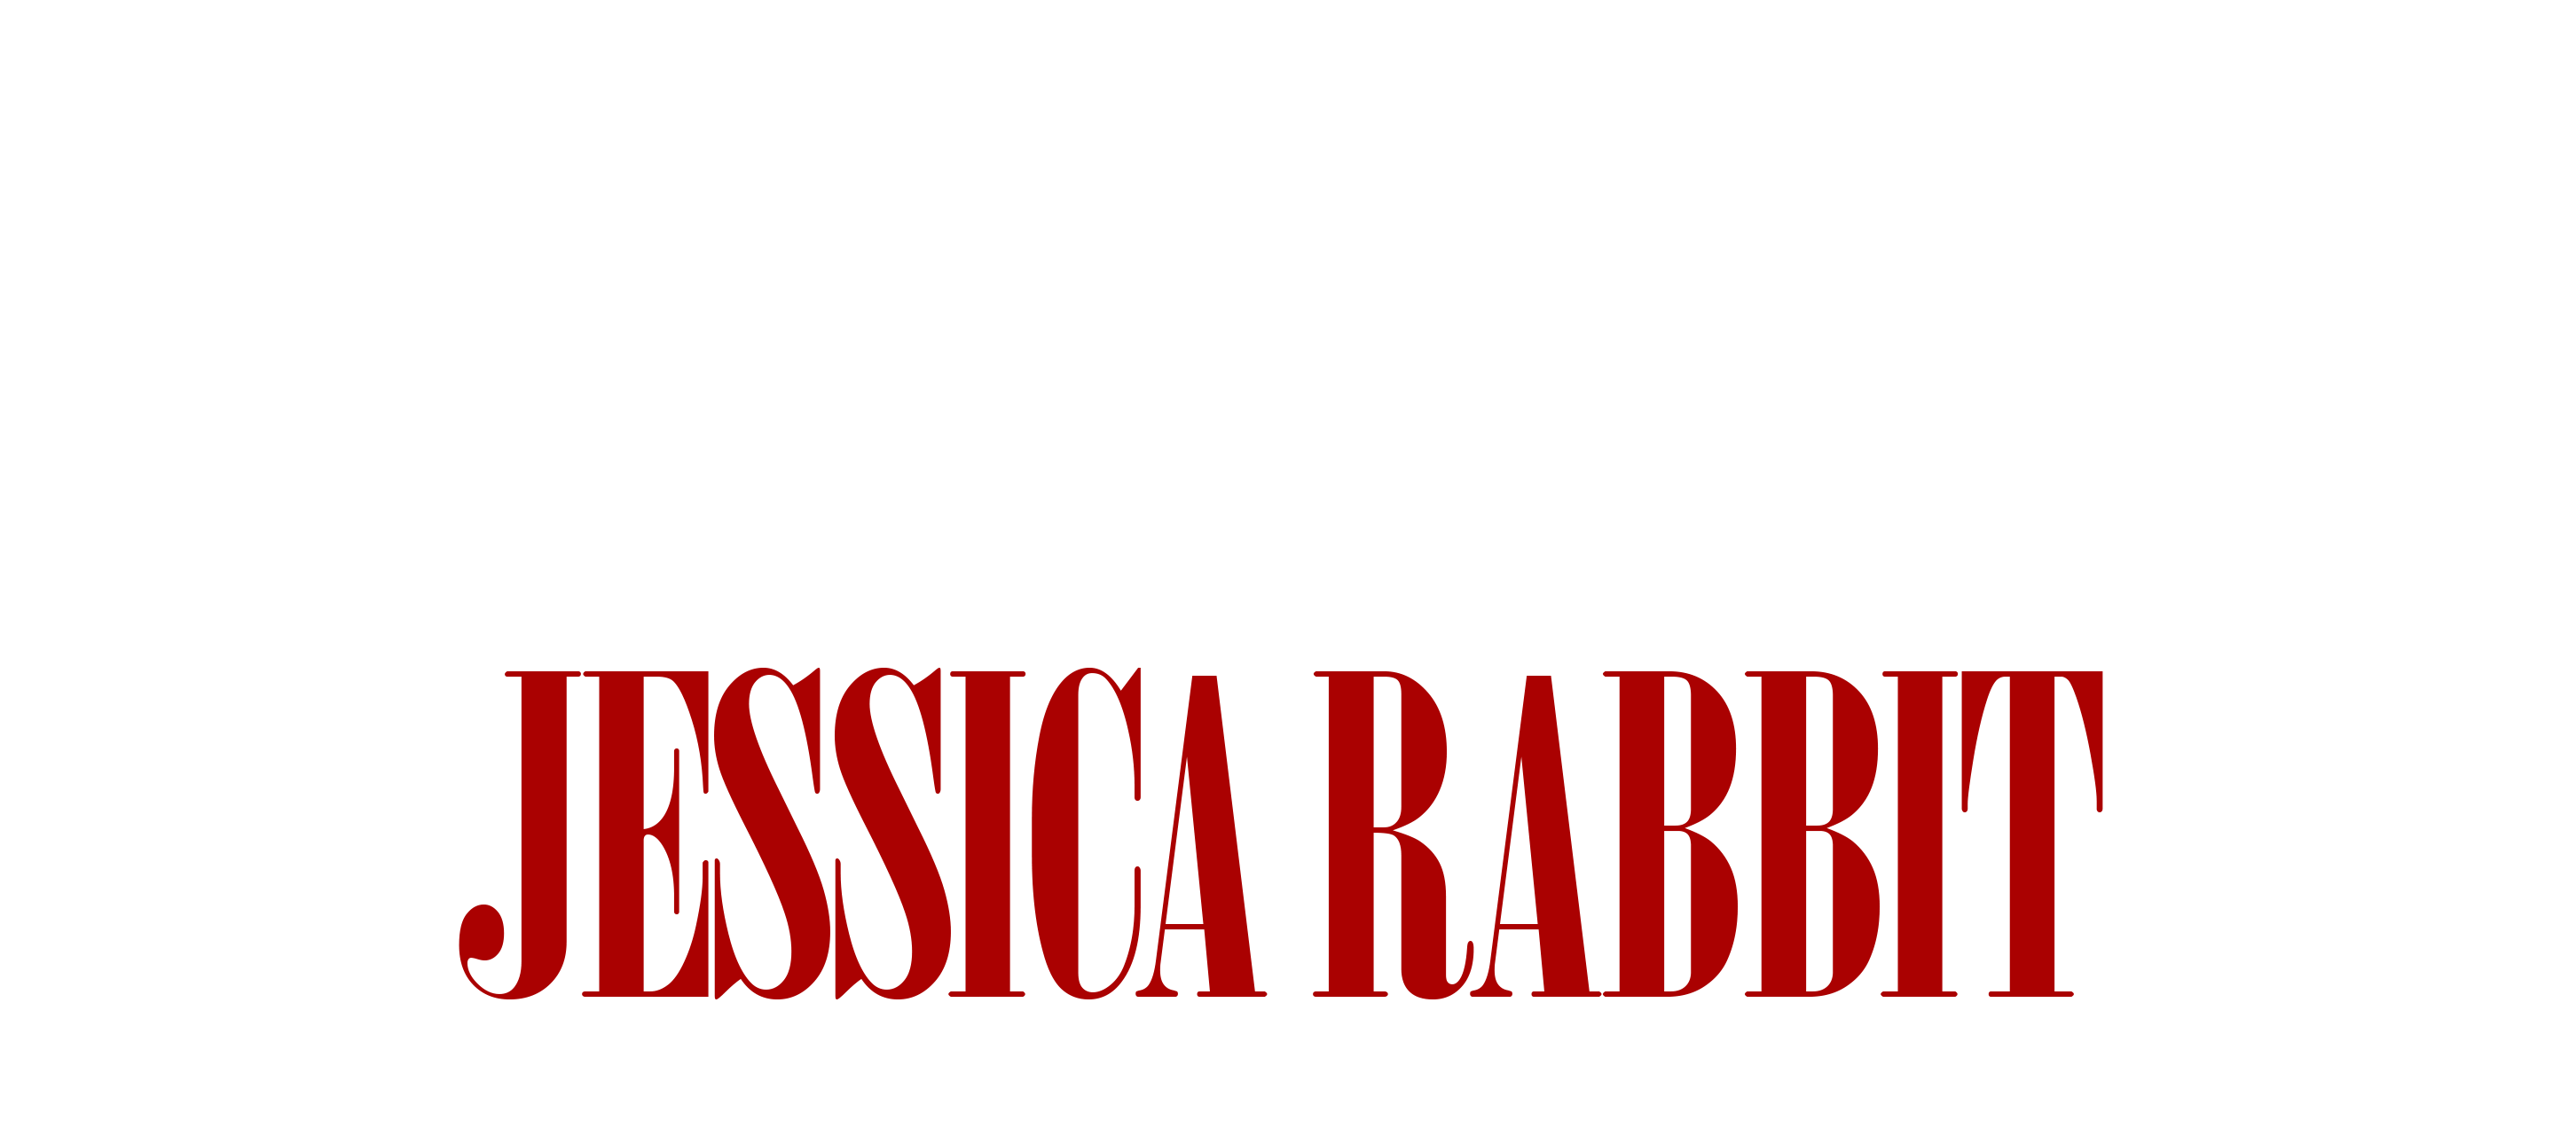 Jessica Rabbit Logo - Outerwear | Sleigh Bells